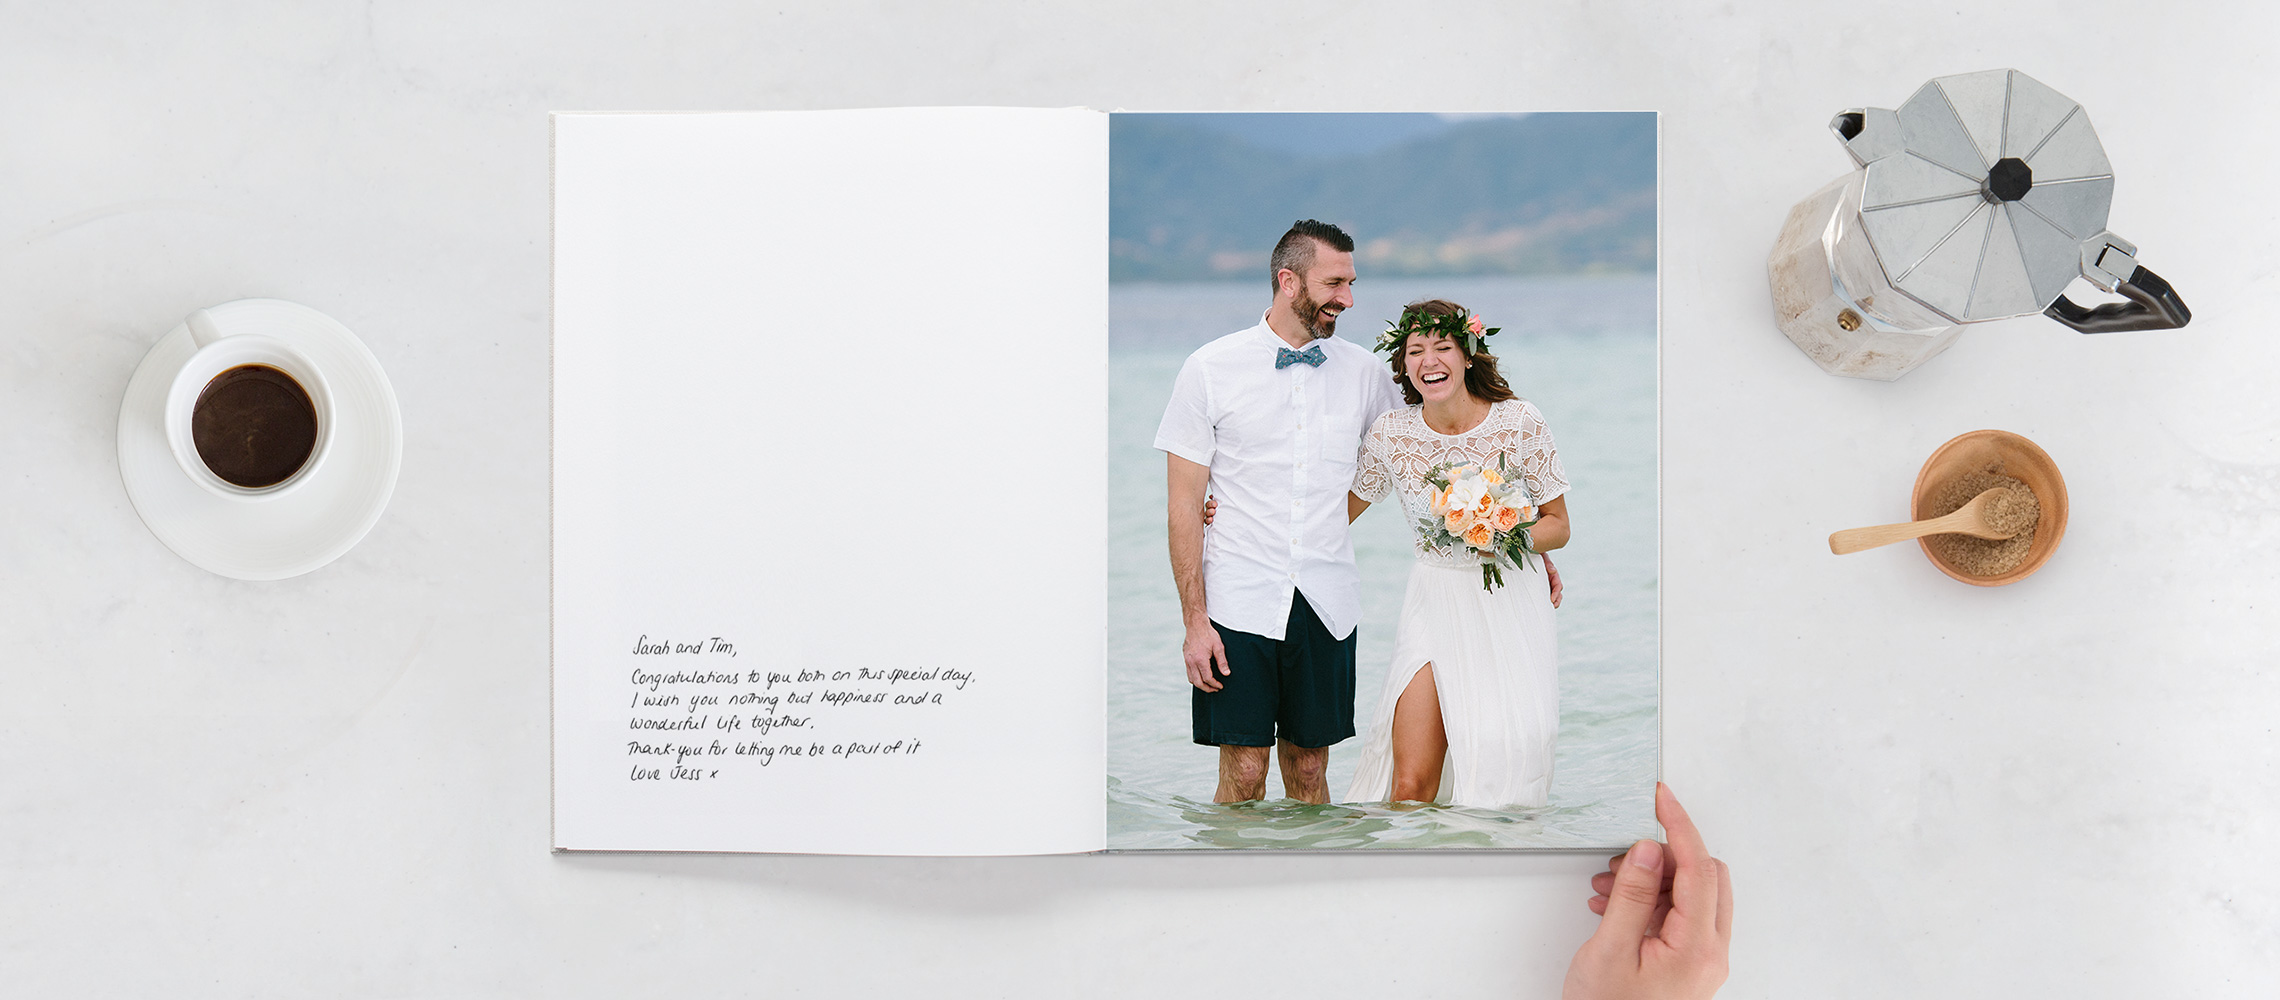 Geöffnetes Gästebuch mit lachendem Brautpaar im Wasser und einem Schriftzug auf leerer Seite.